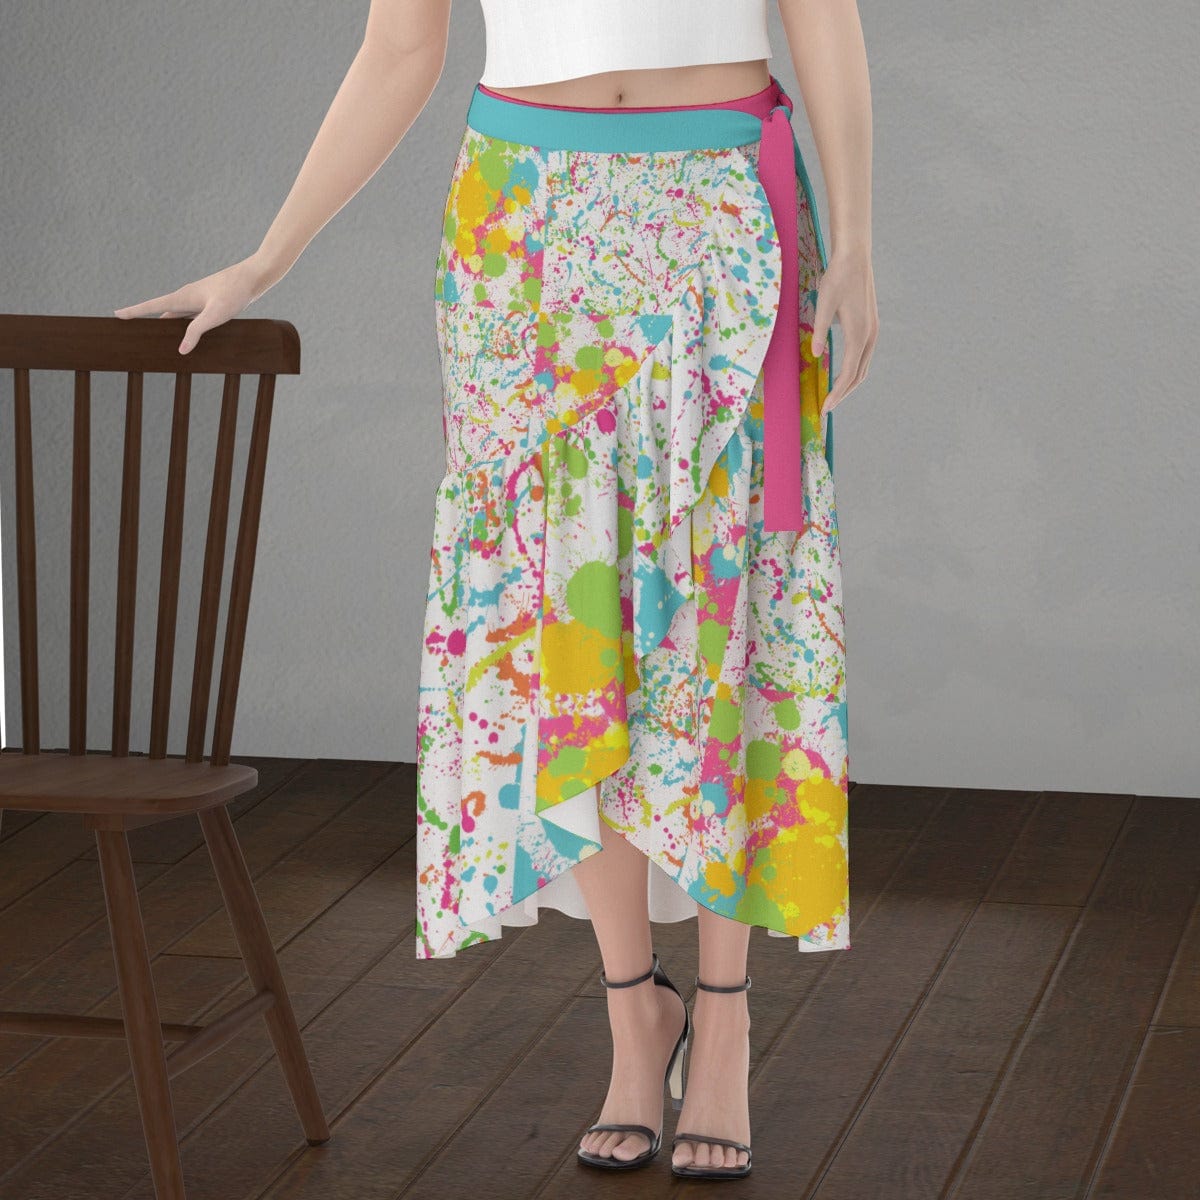 Yoycol skirt Paint Splatter - Women's Wrap Skirt